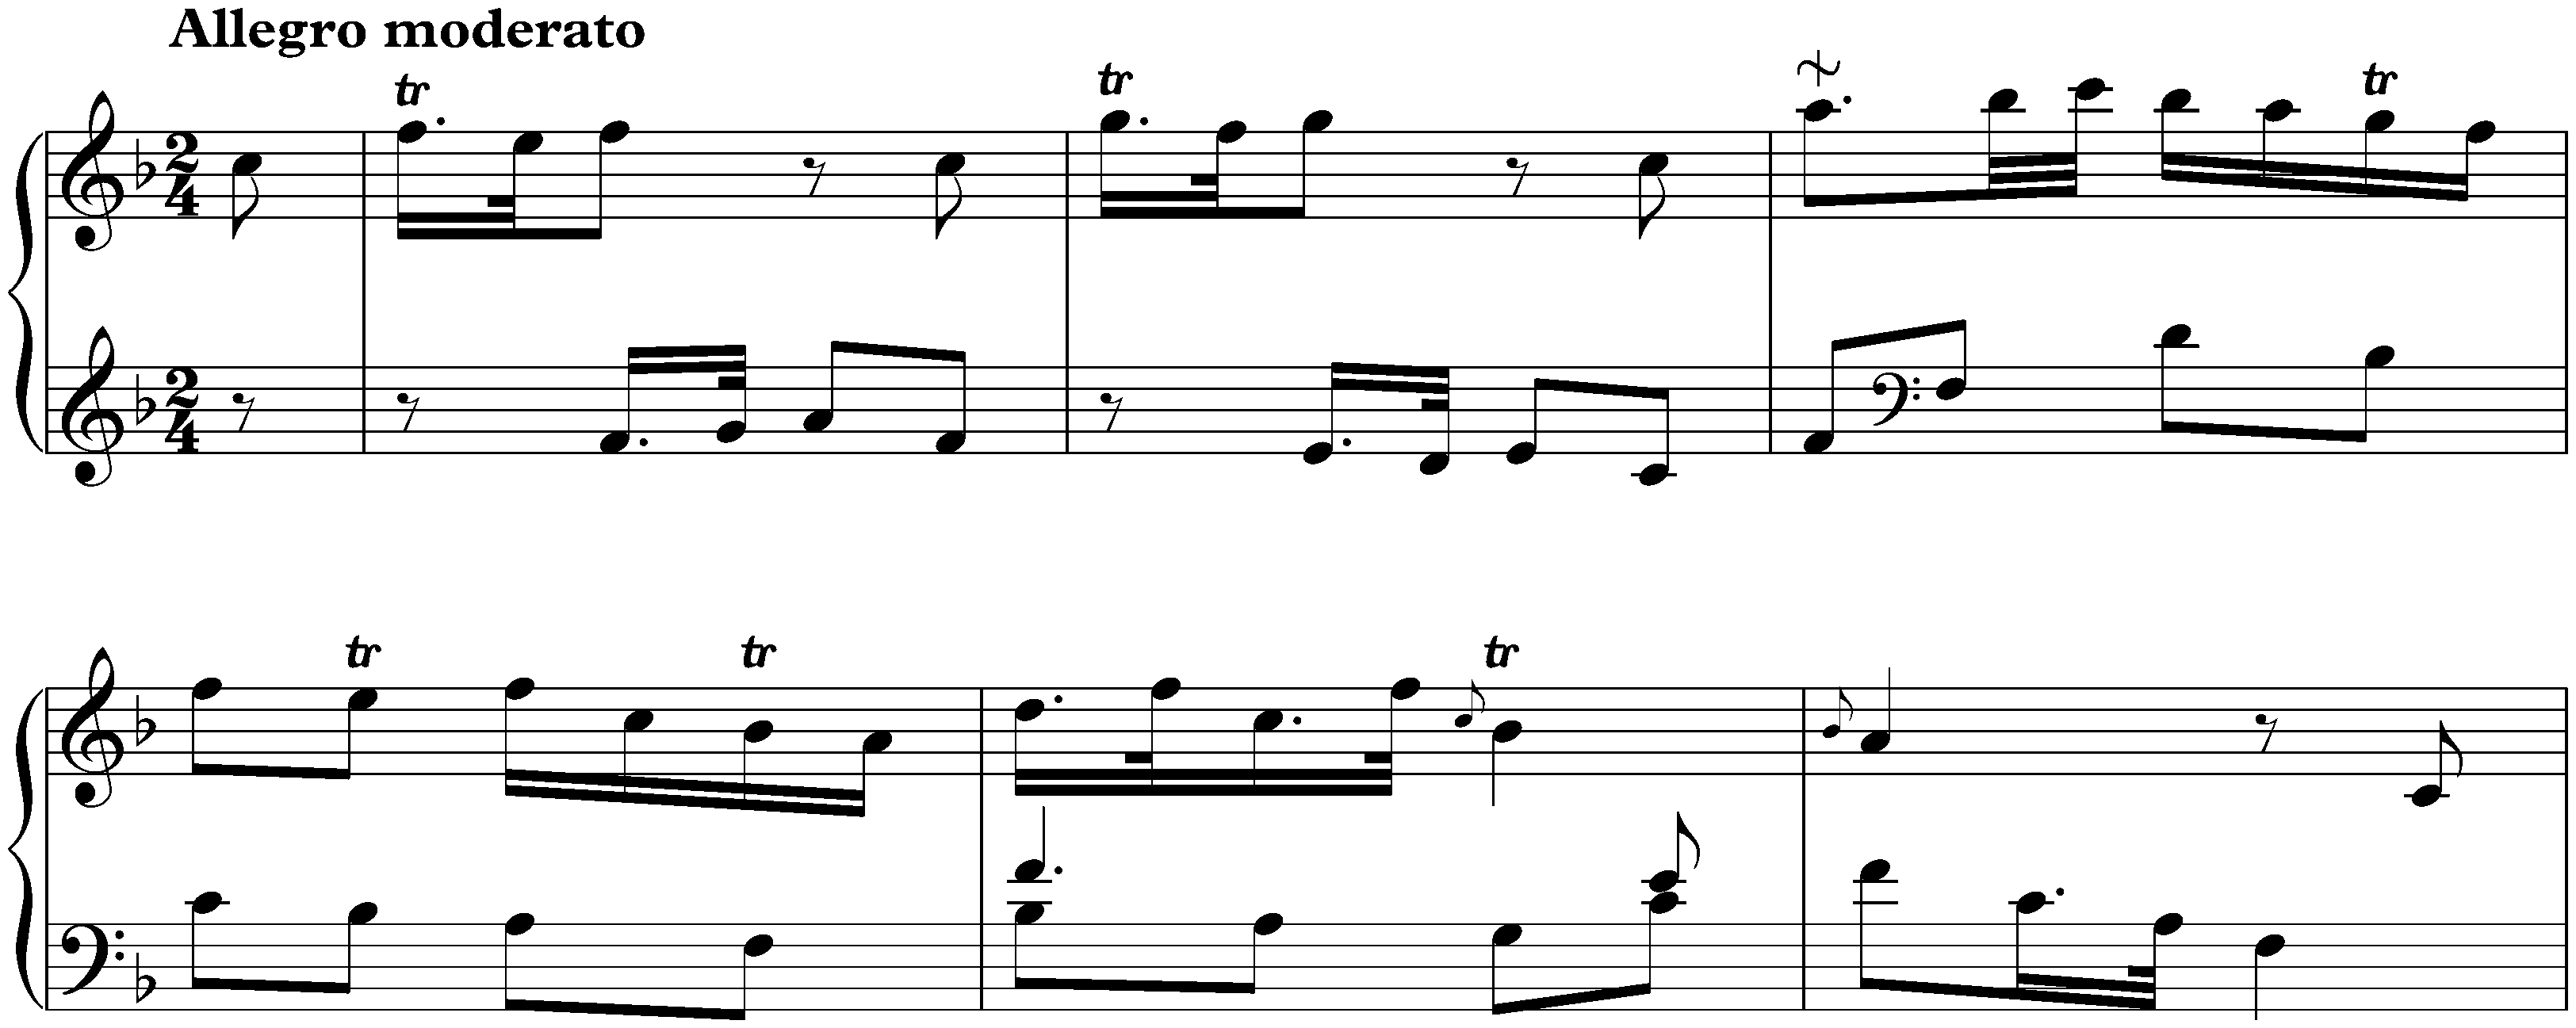 Sonata in F major, Hob. XVI:F3; 1. Allegro moderato